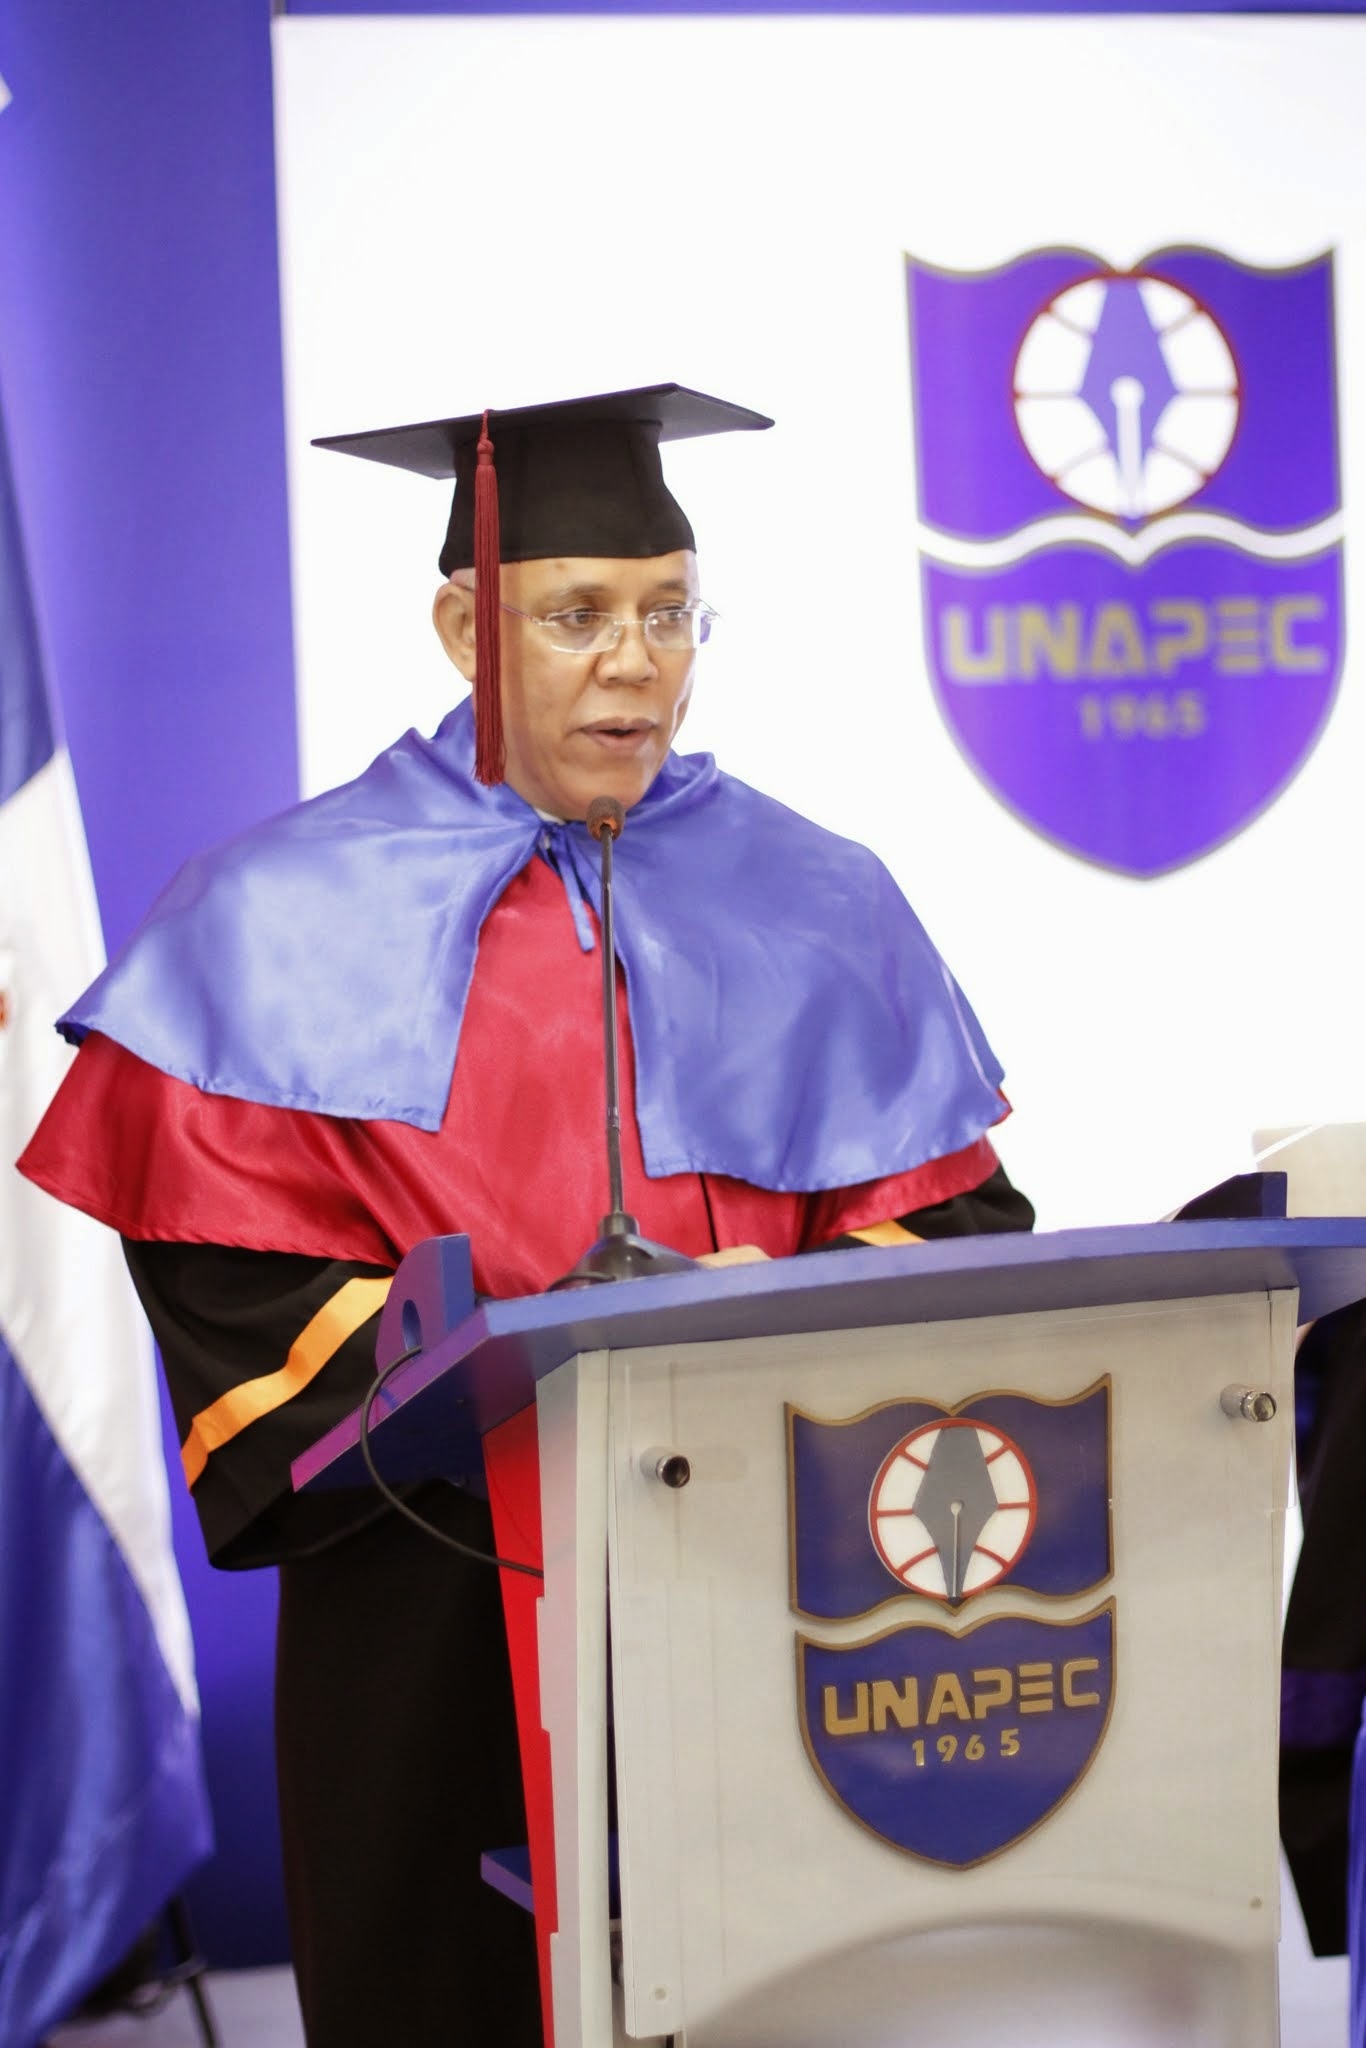 Dr. Víctor González, estudiante con el índica académico más alto, ofreció un discurso en nombre de todos los graduandos